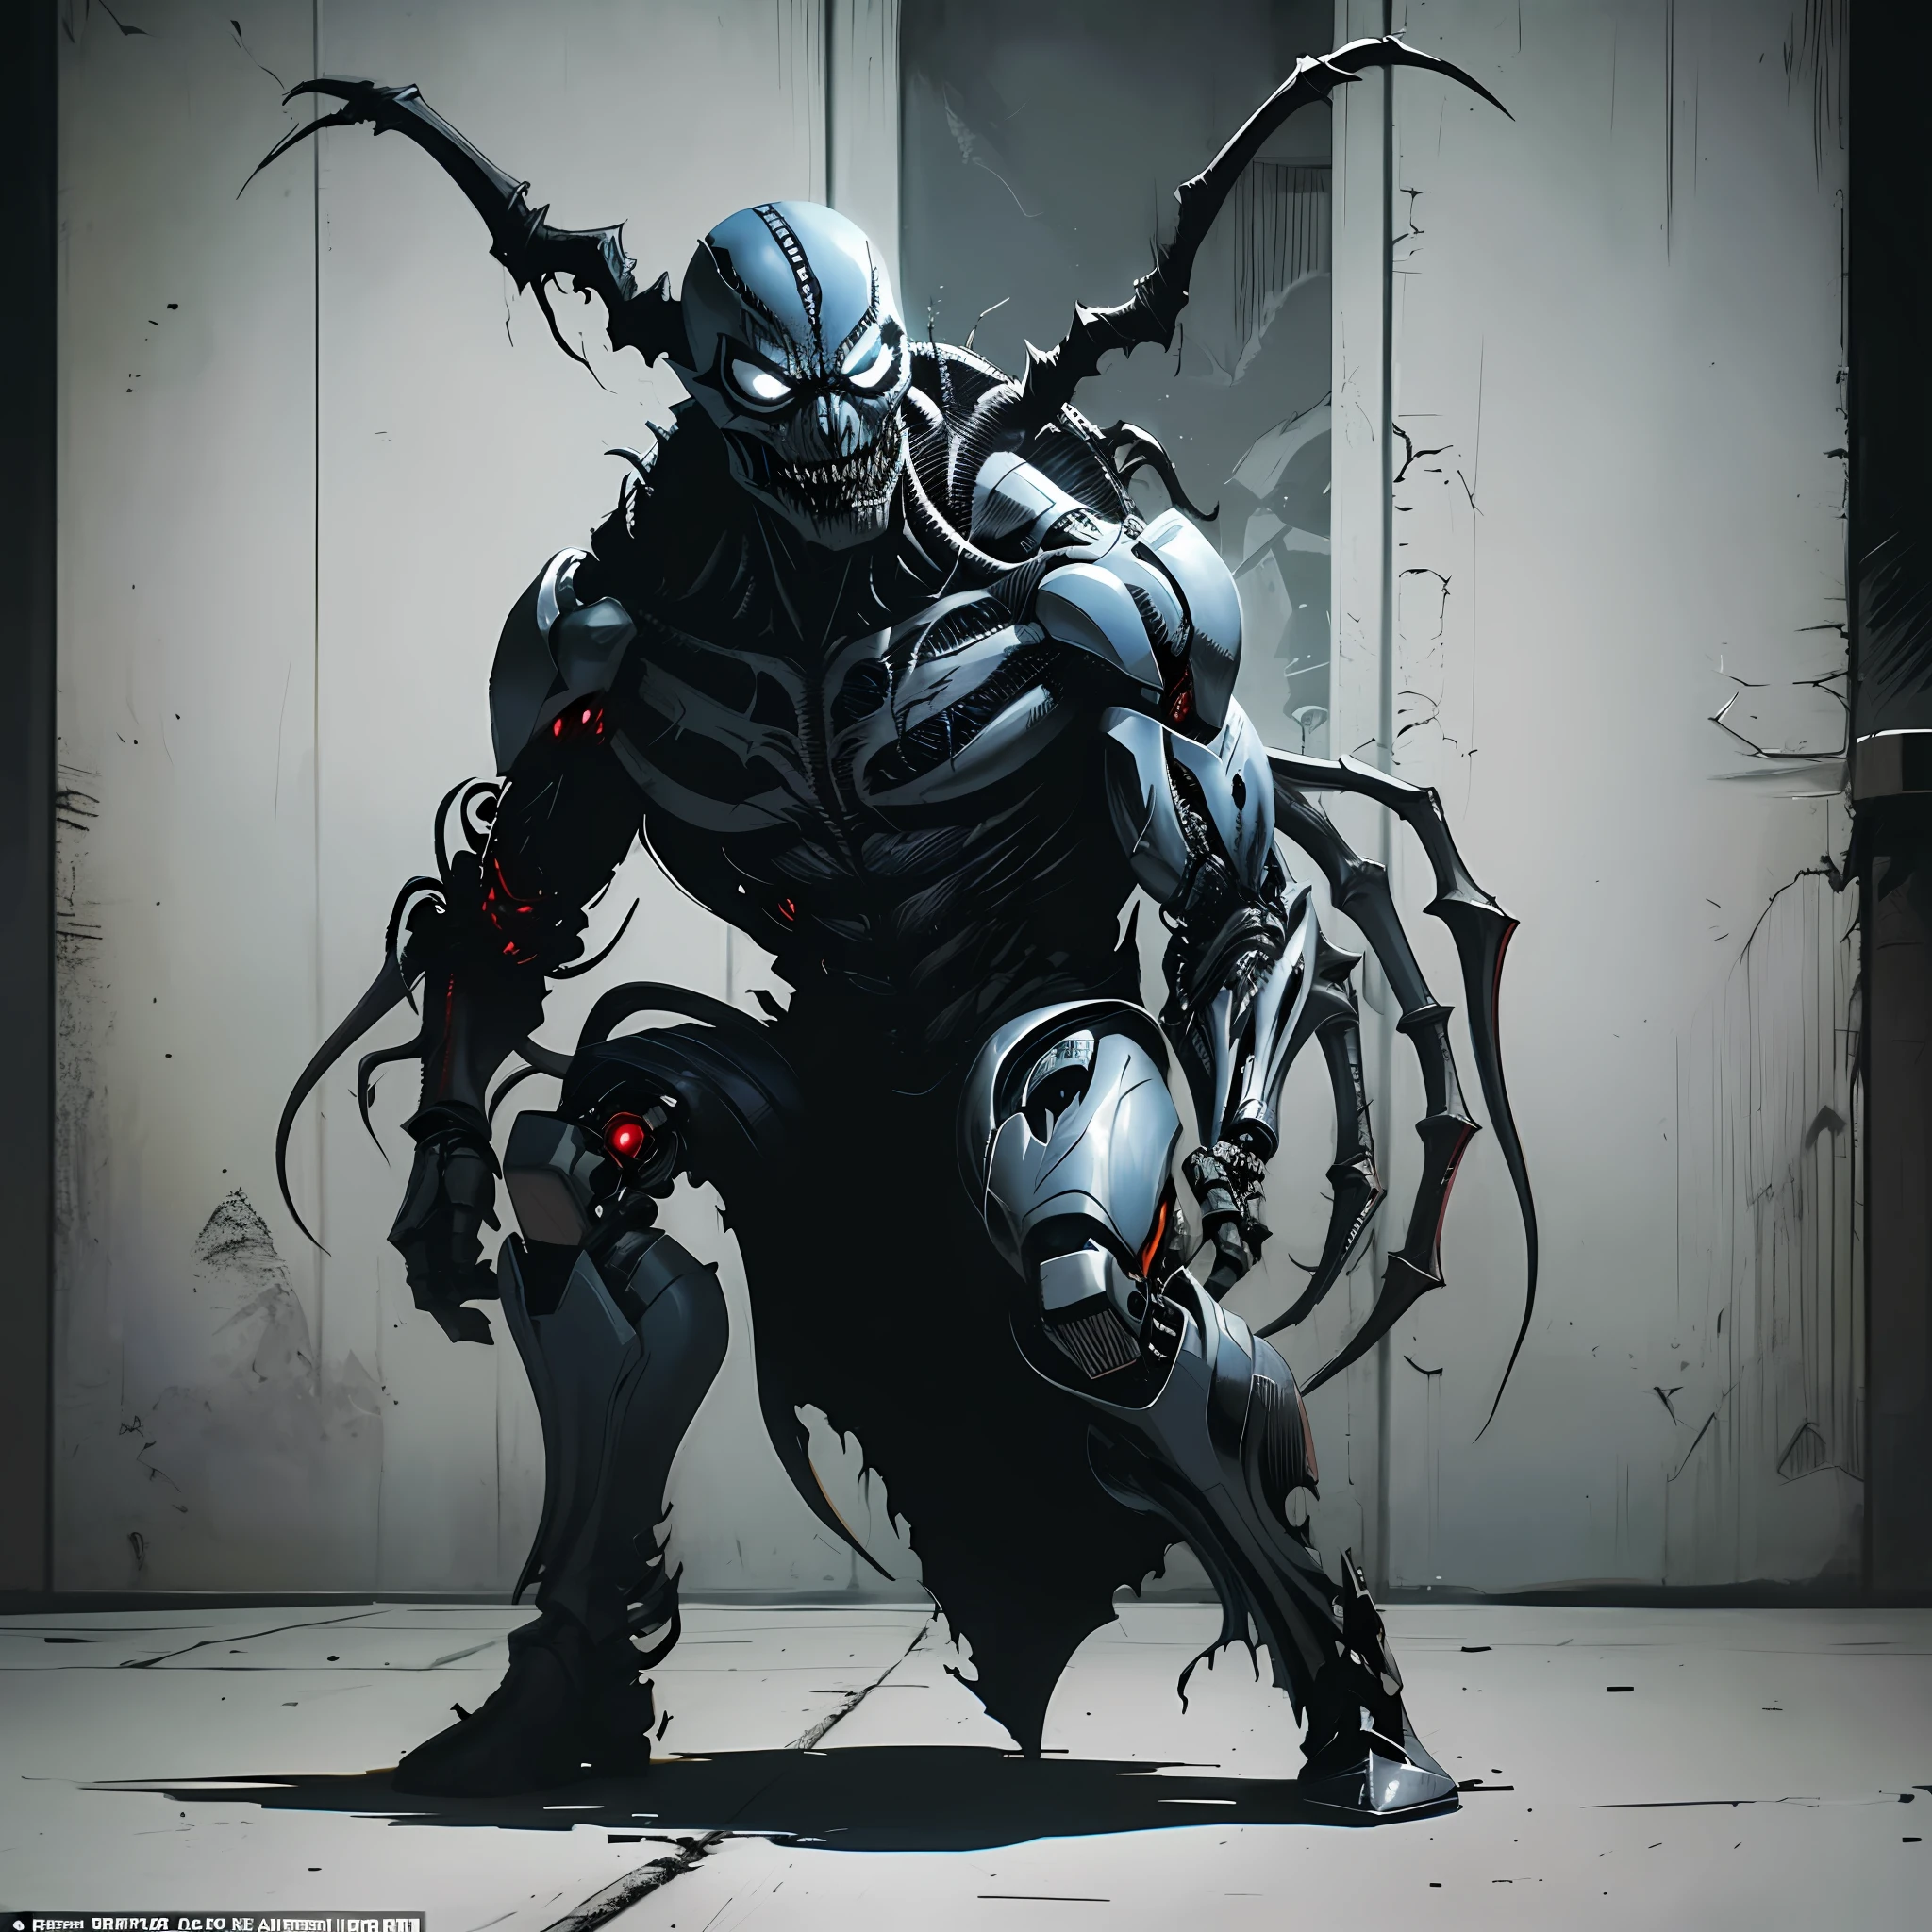 Cyborg Demon Spawn ذو المظهر الشرير مصاب بـ Venom Symbiote, مستوحاة من أعمال تود ماكفارلين الفنية, التقاط الأجواء المظلمة والشجاعة لـ Image Comics و DC Comics. لقطة مليئة بالإثارة تدور أحداثها في ساحة المعركة, يصور وجودًا مرعبًا وشريرًا. عرض شخصية واحدة لكامل الجسم, تحفة